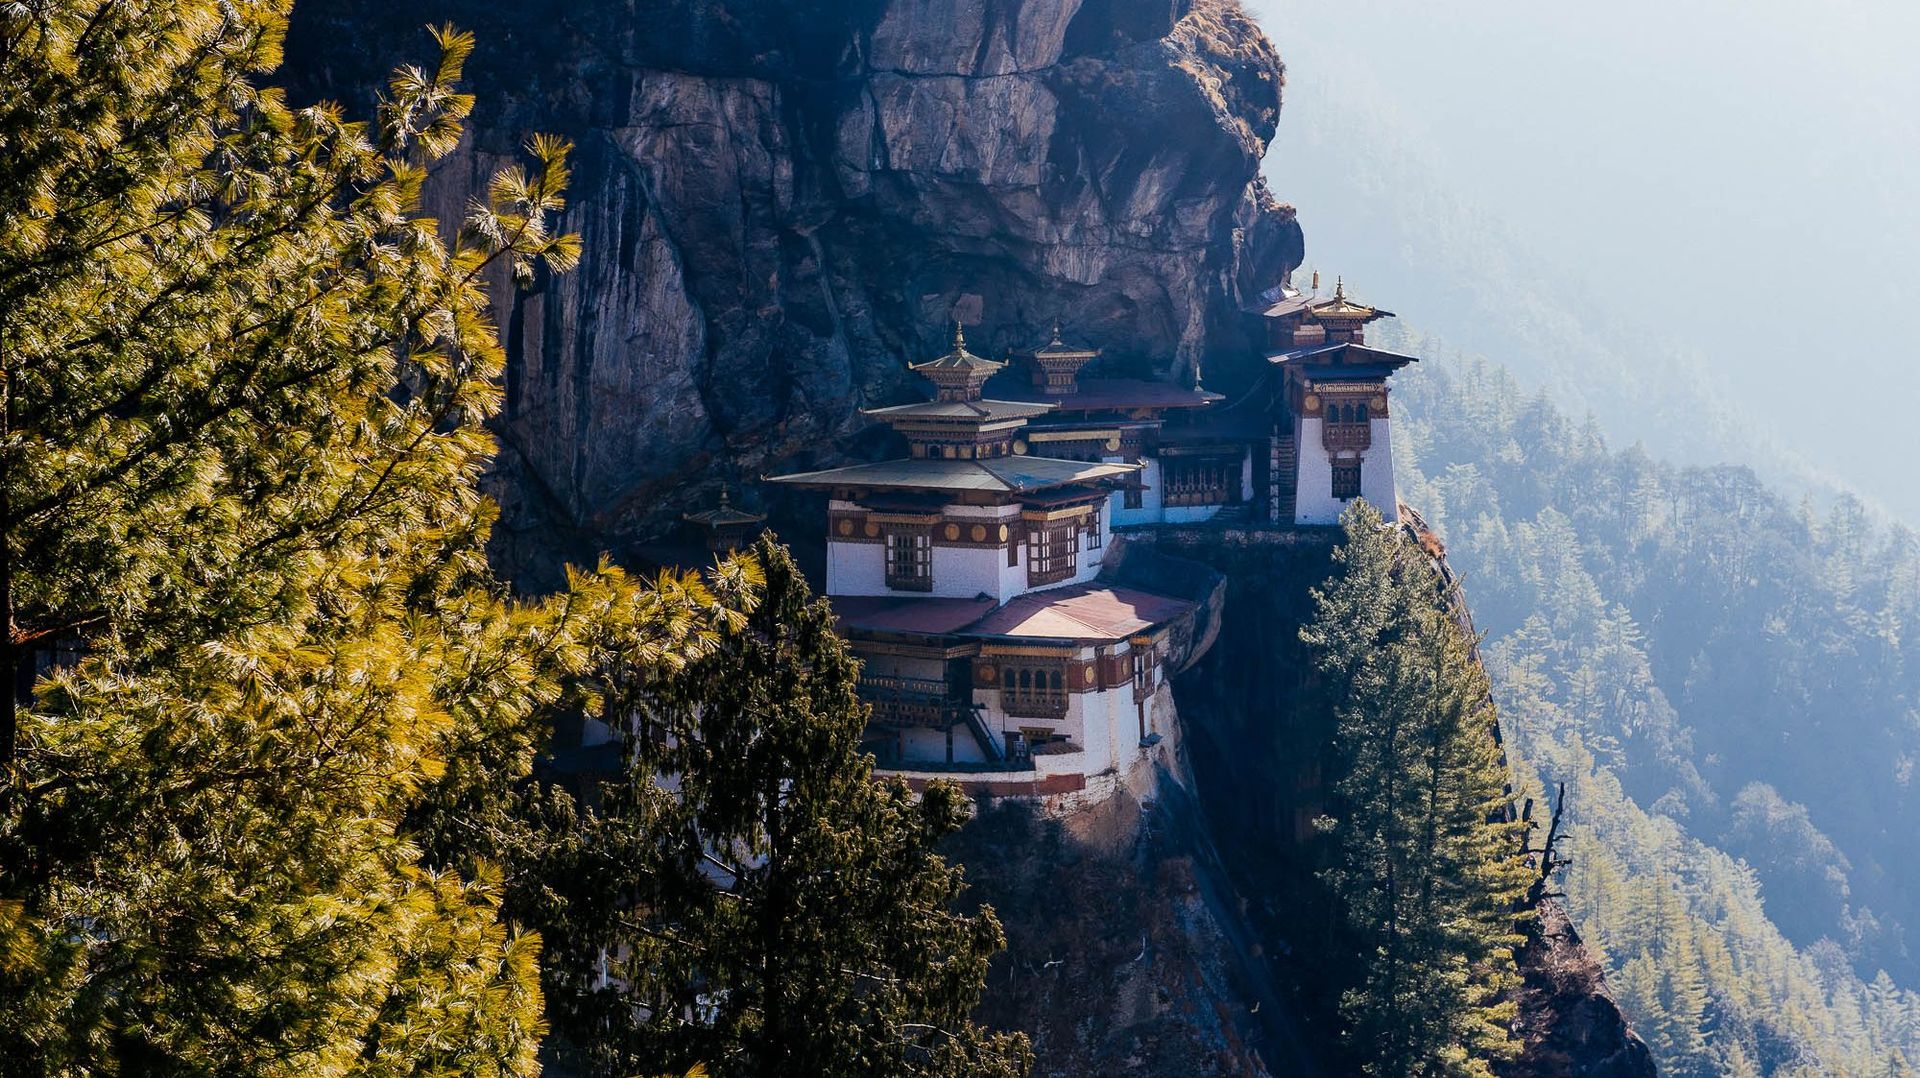 Le "tiger nest", temple emblématique du Bhoutan, est un lieu sacré pour tous les bouddhistes.